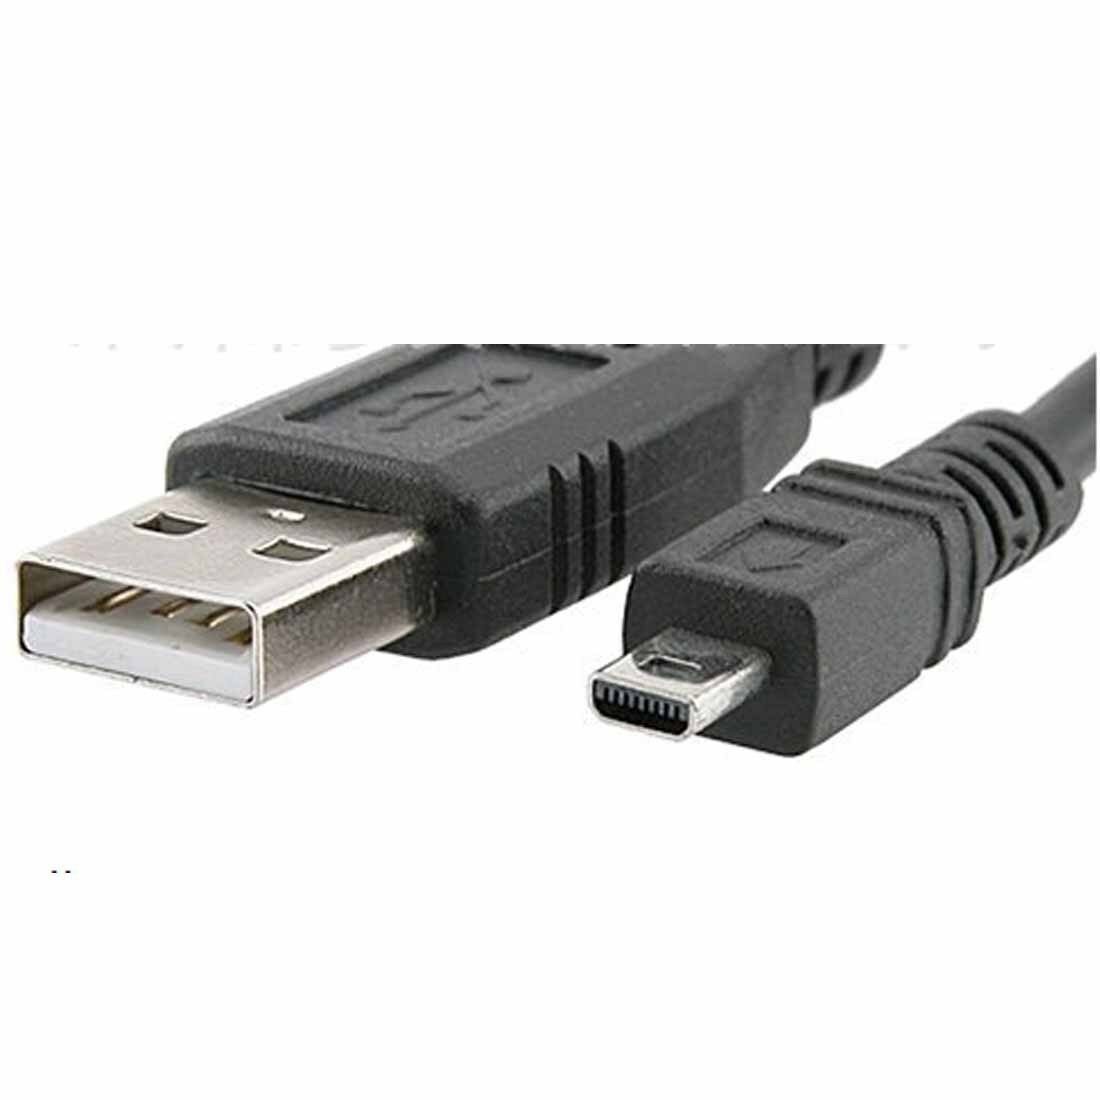 USB CABLE FOR KODAK ZD710 P880 C530 C330 C310 V530 C360 Z760 Z730 Z740 C340 Z700